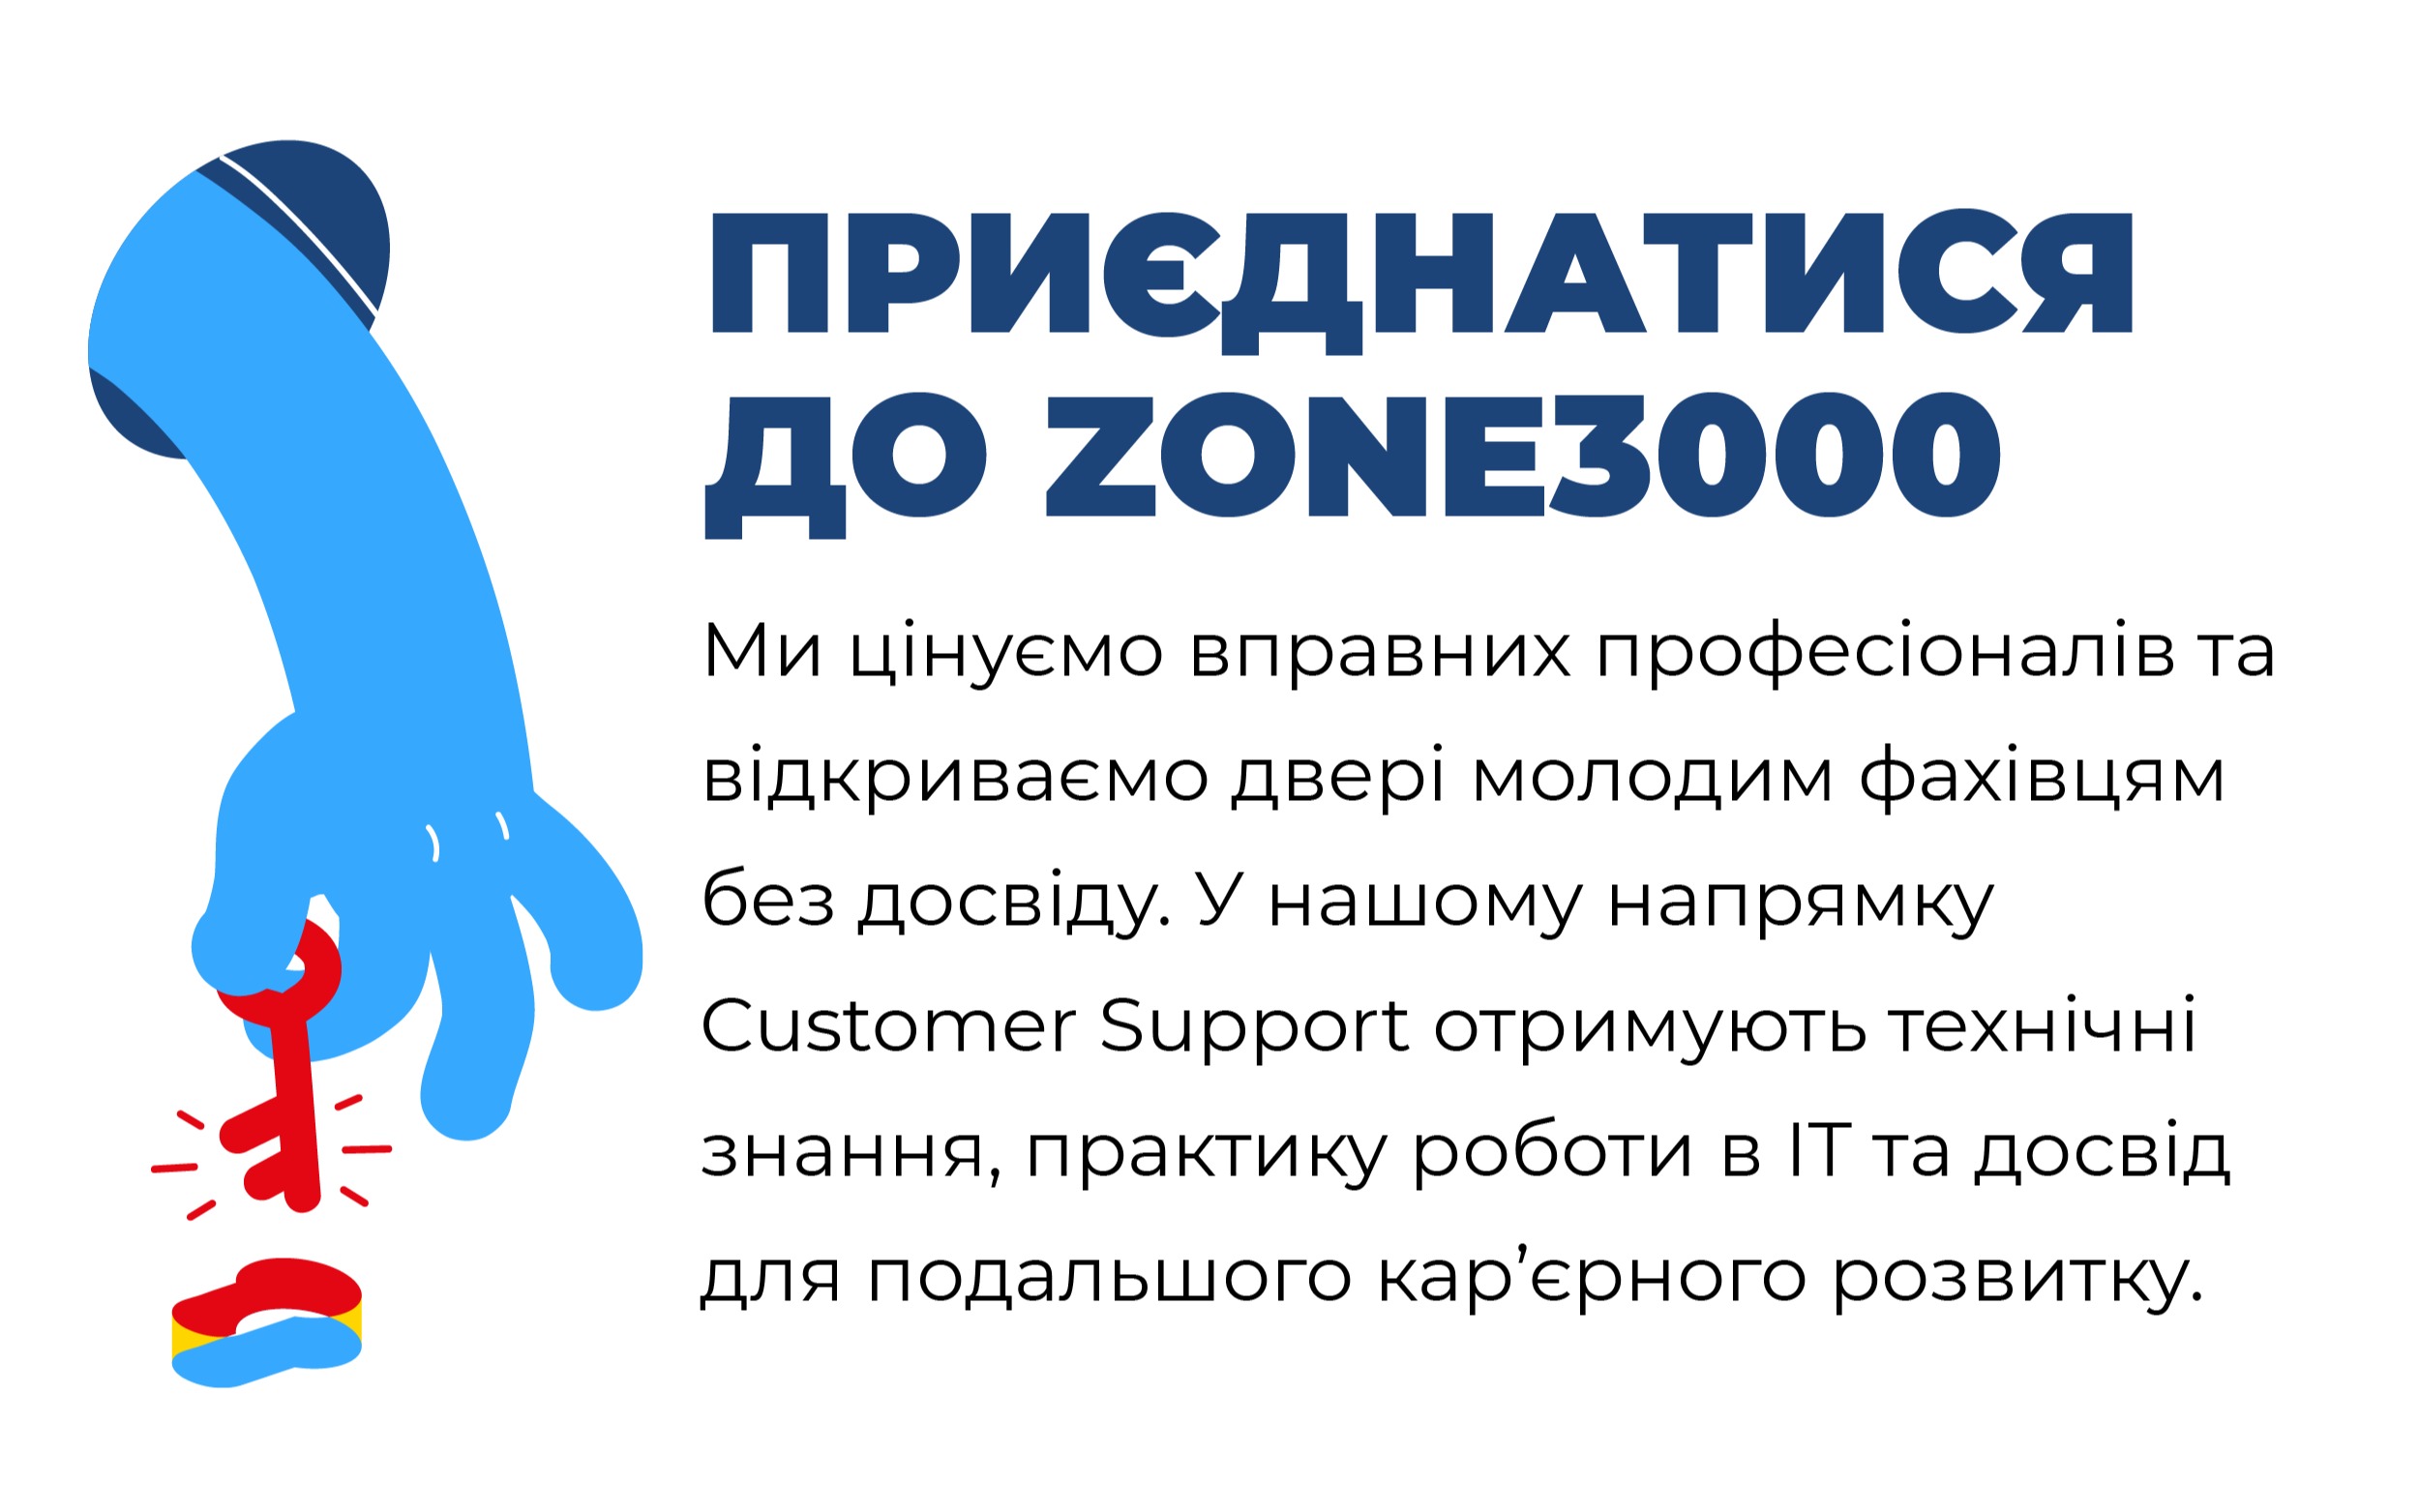 ZONE3000 — вакансия в Web Analyst: фото 11